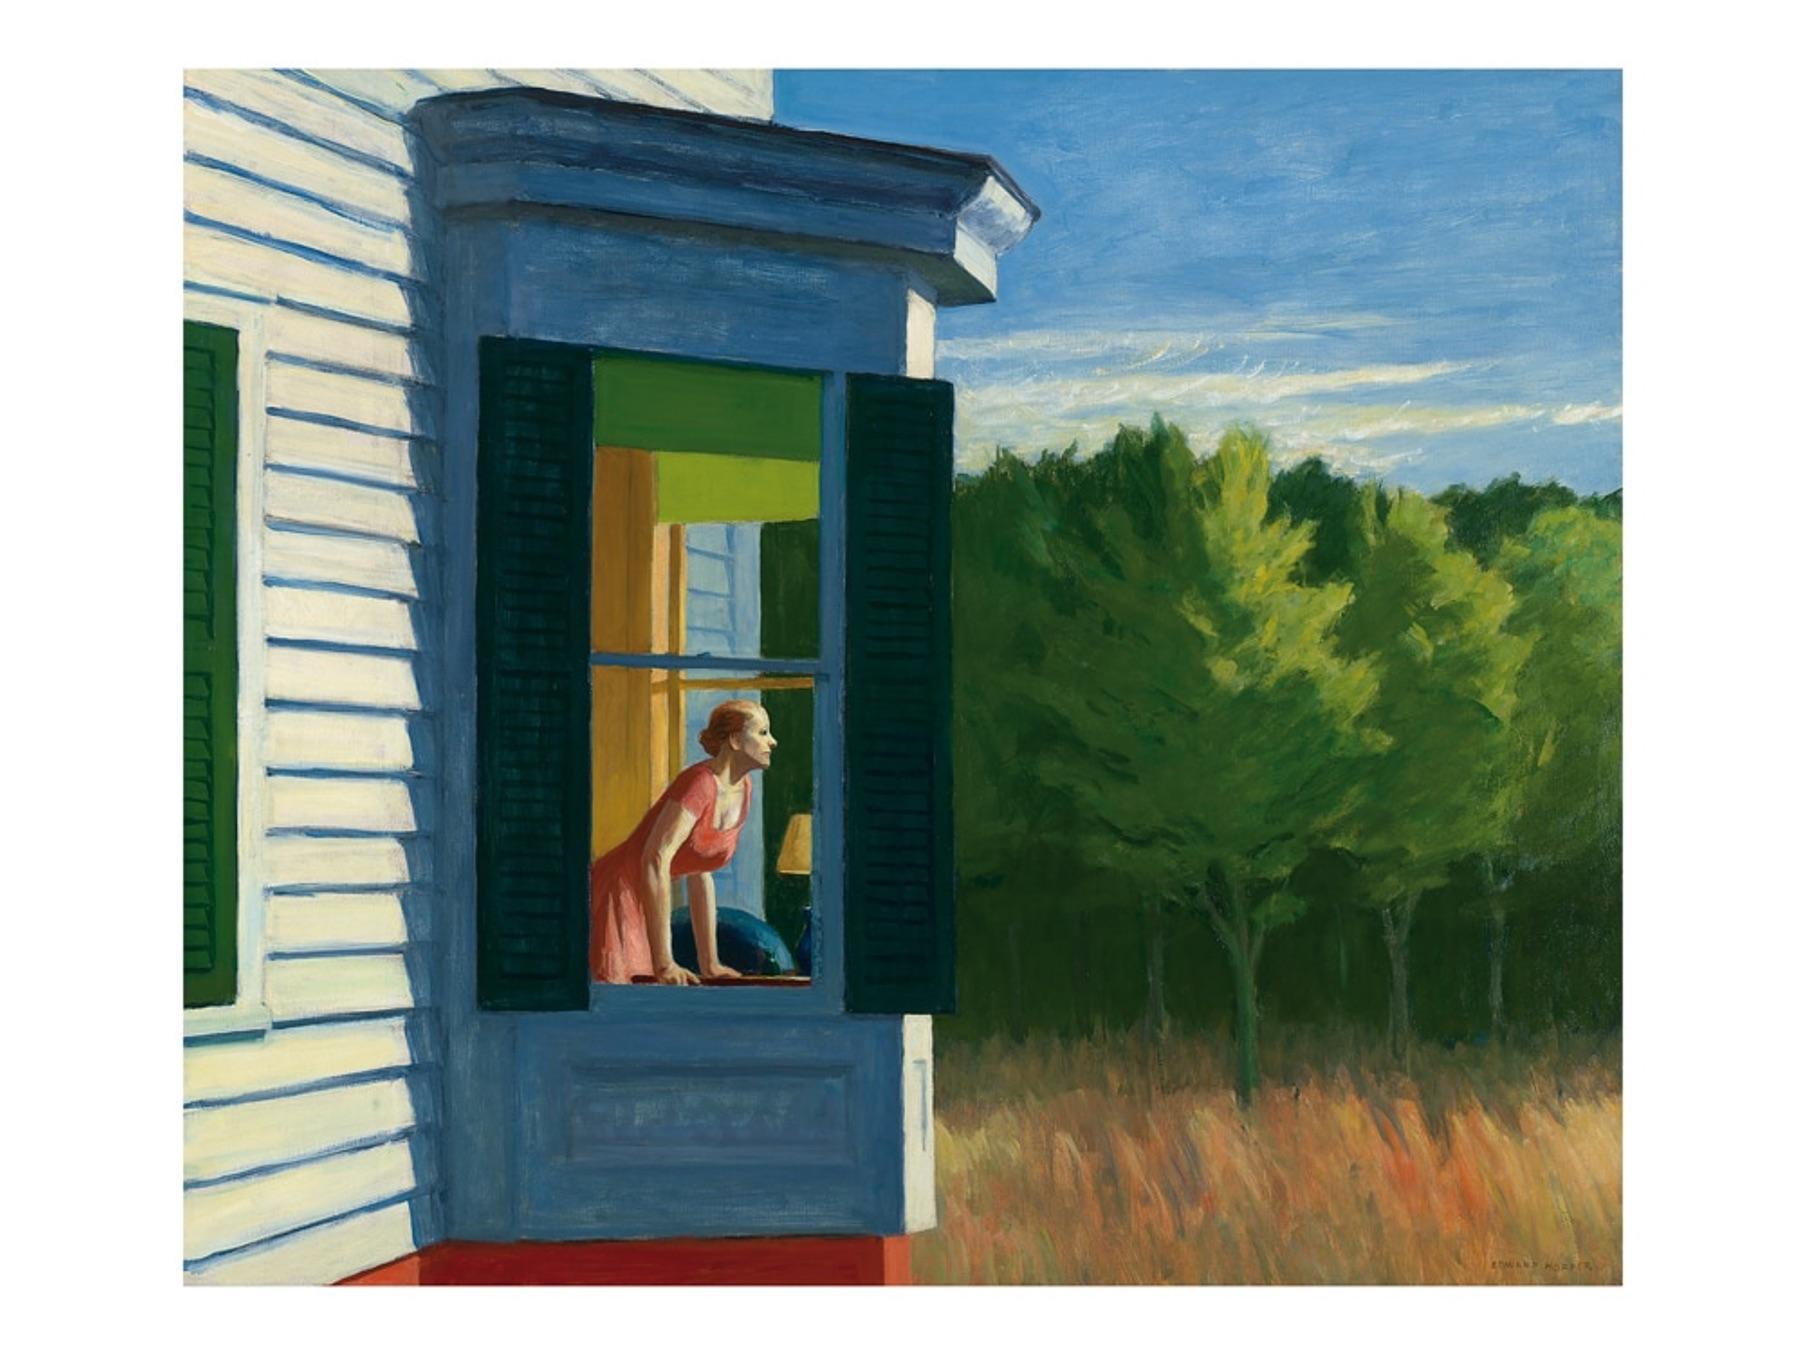 Edward Hopper
Morgen à Cape Cod, 1950
Impression sur papier
60x80cm
Edition de 1,000 exemplaires